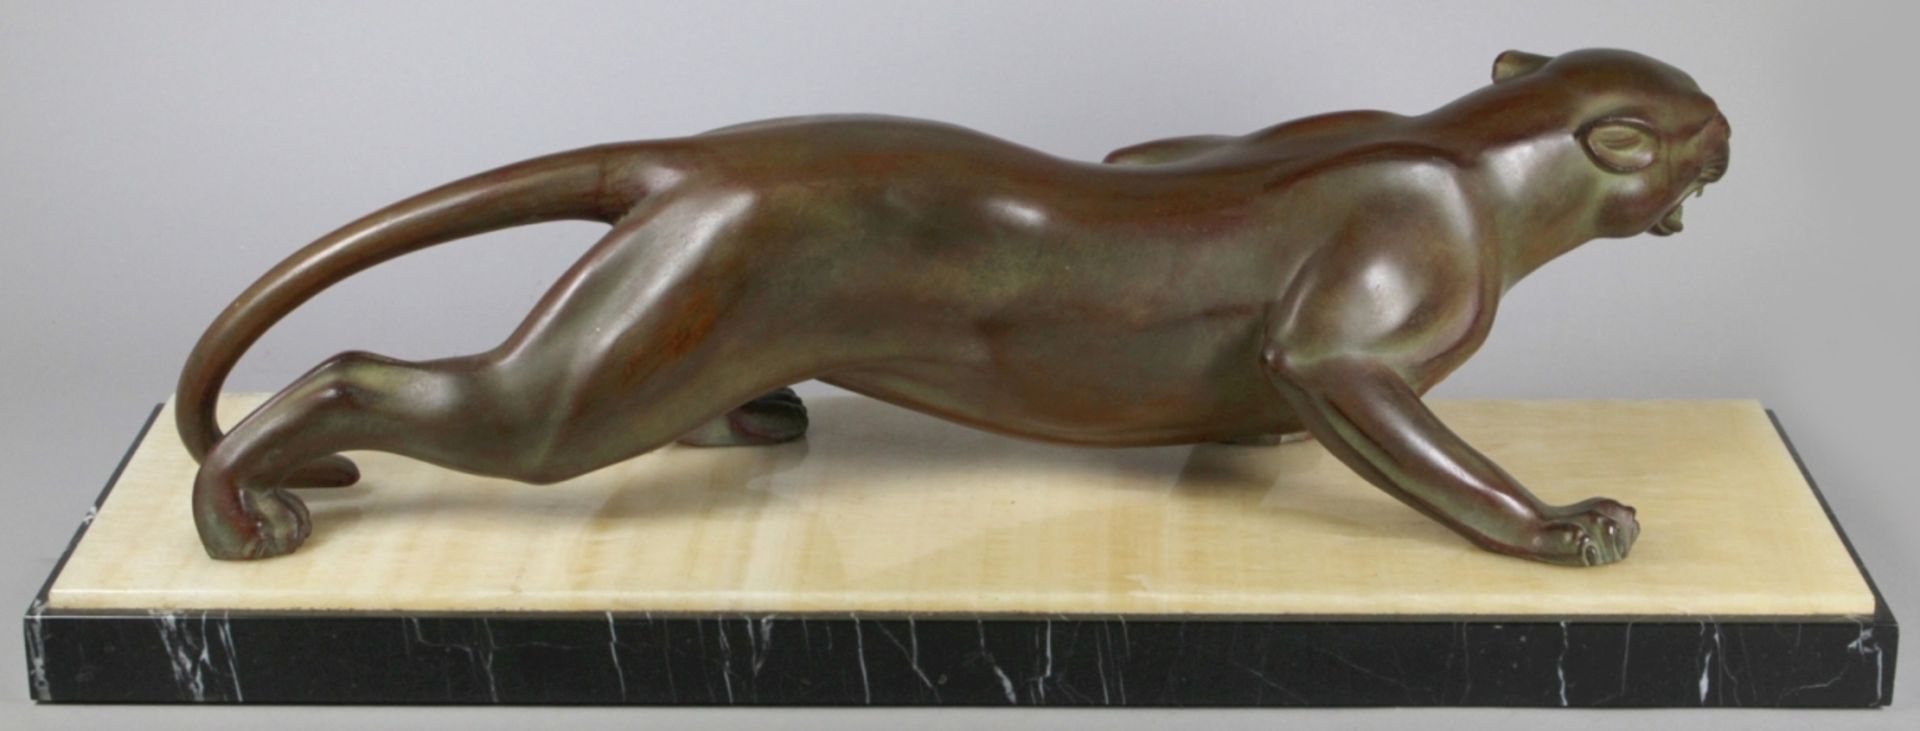 Weißbronze-Tierplastik, "Panther", Brault, J., Bildhauer 1. Hälfte 20. Jh.,vollplastische, natu - Bild 2 aus 4